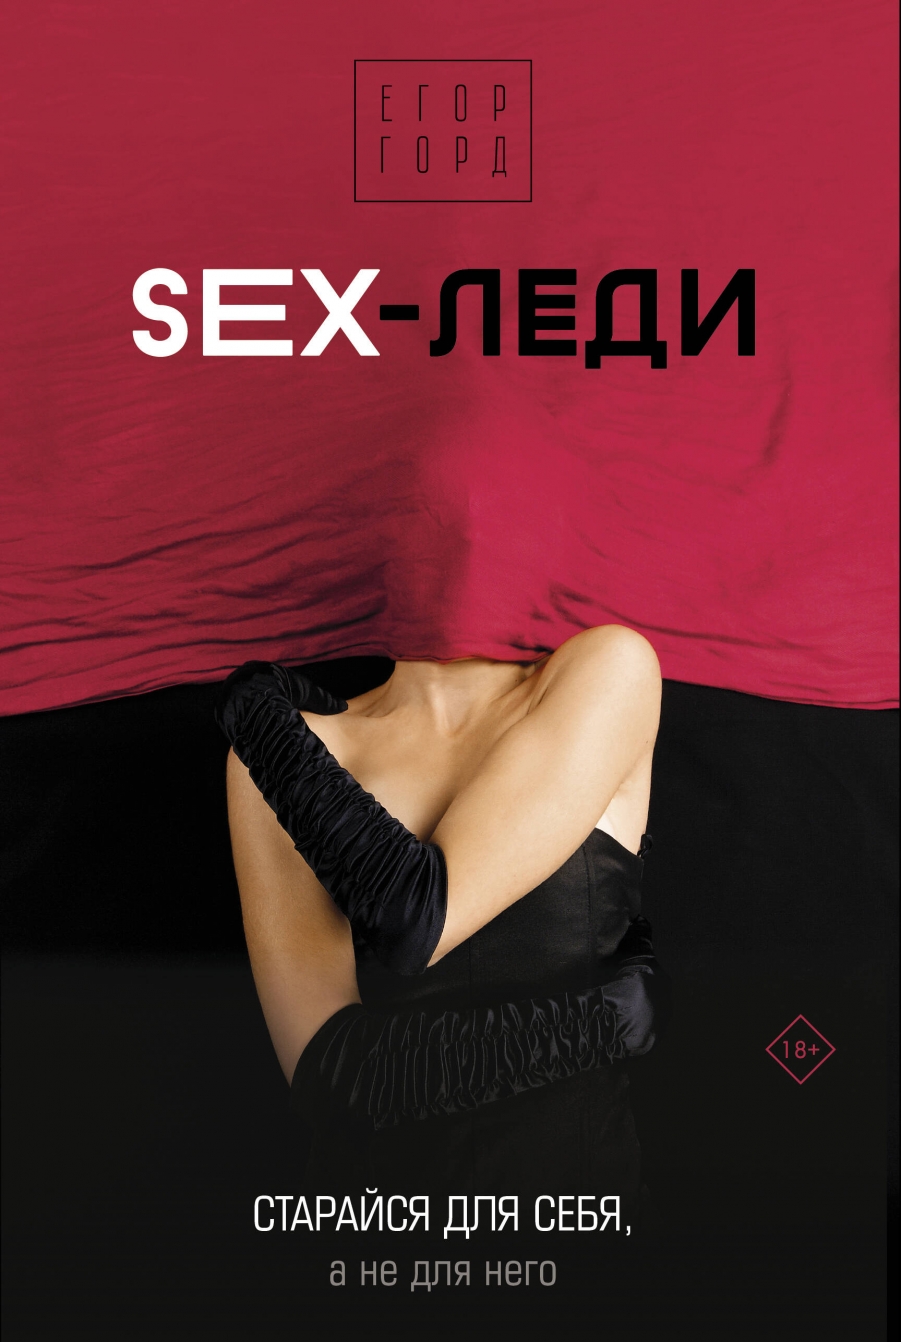  . SEX-.   ,     